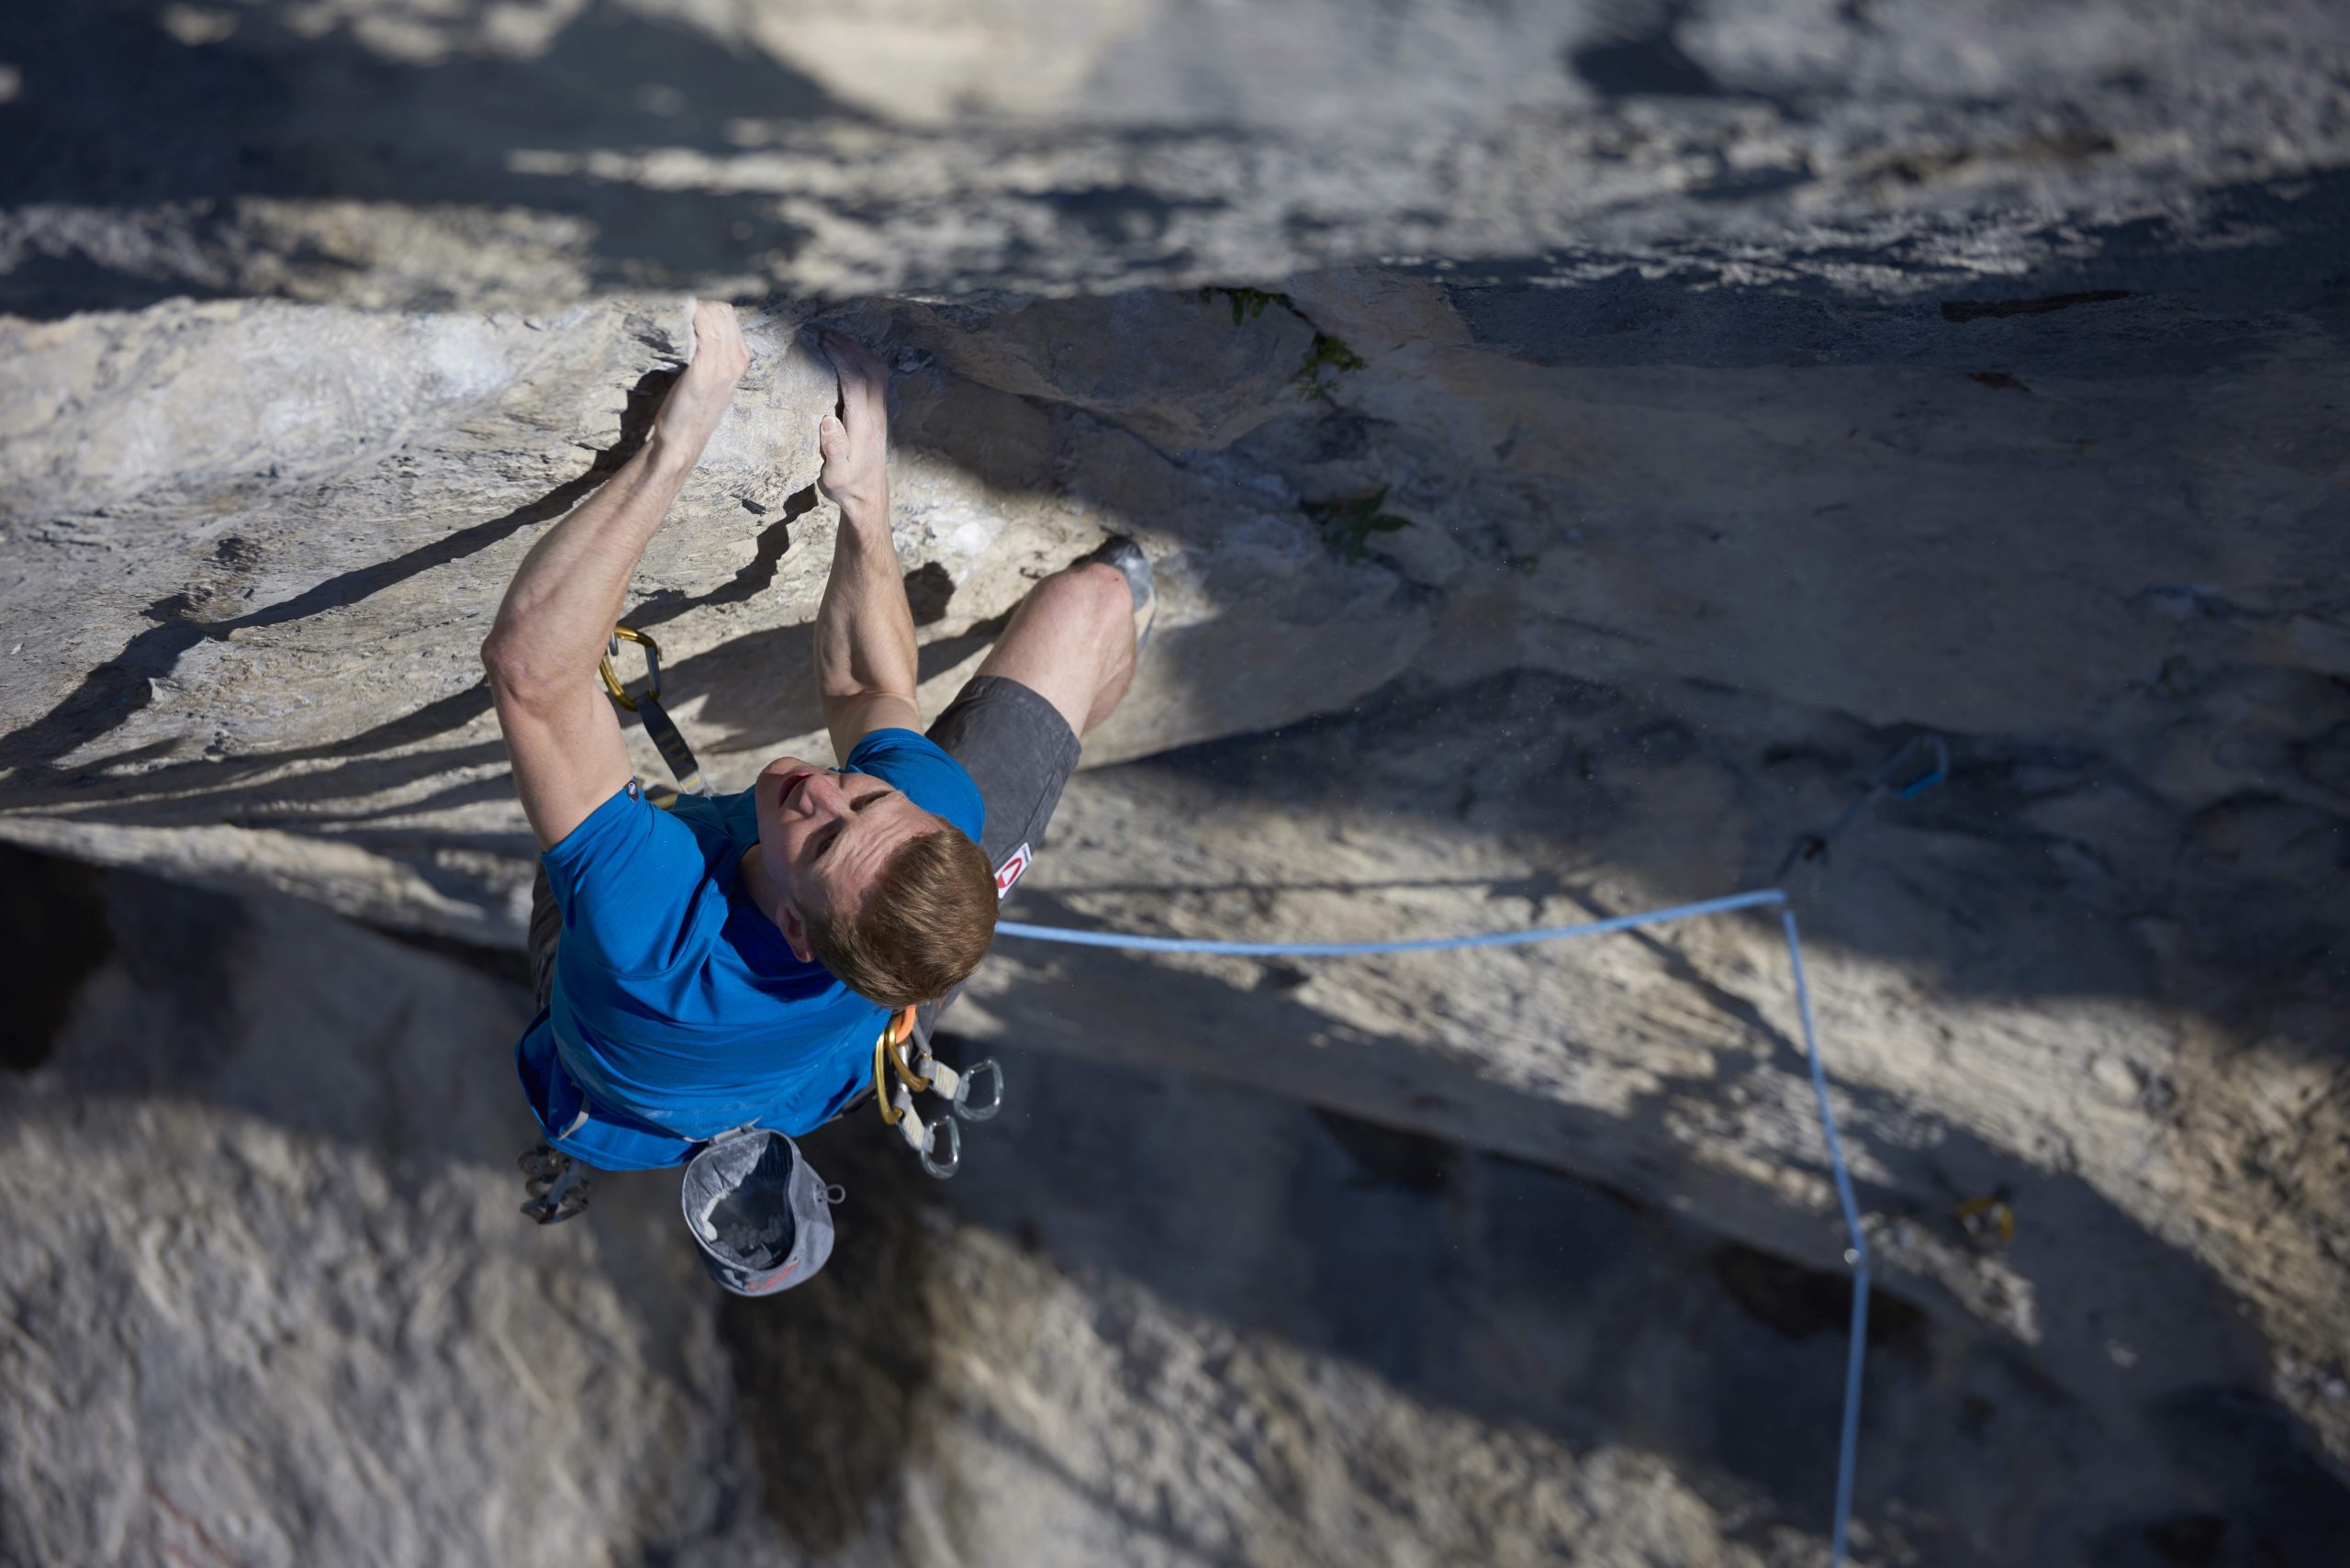 Jakob Schubert in Swingtime, Dschungelbuch, Martinswand, Foto: Michael Meisl I Climbers Paradise